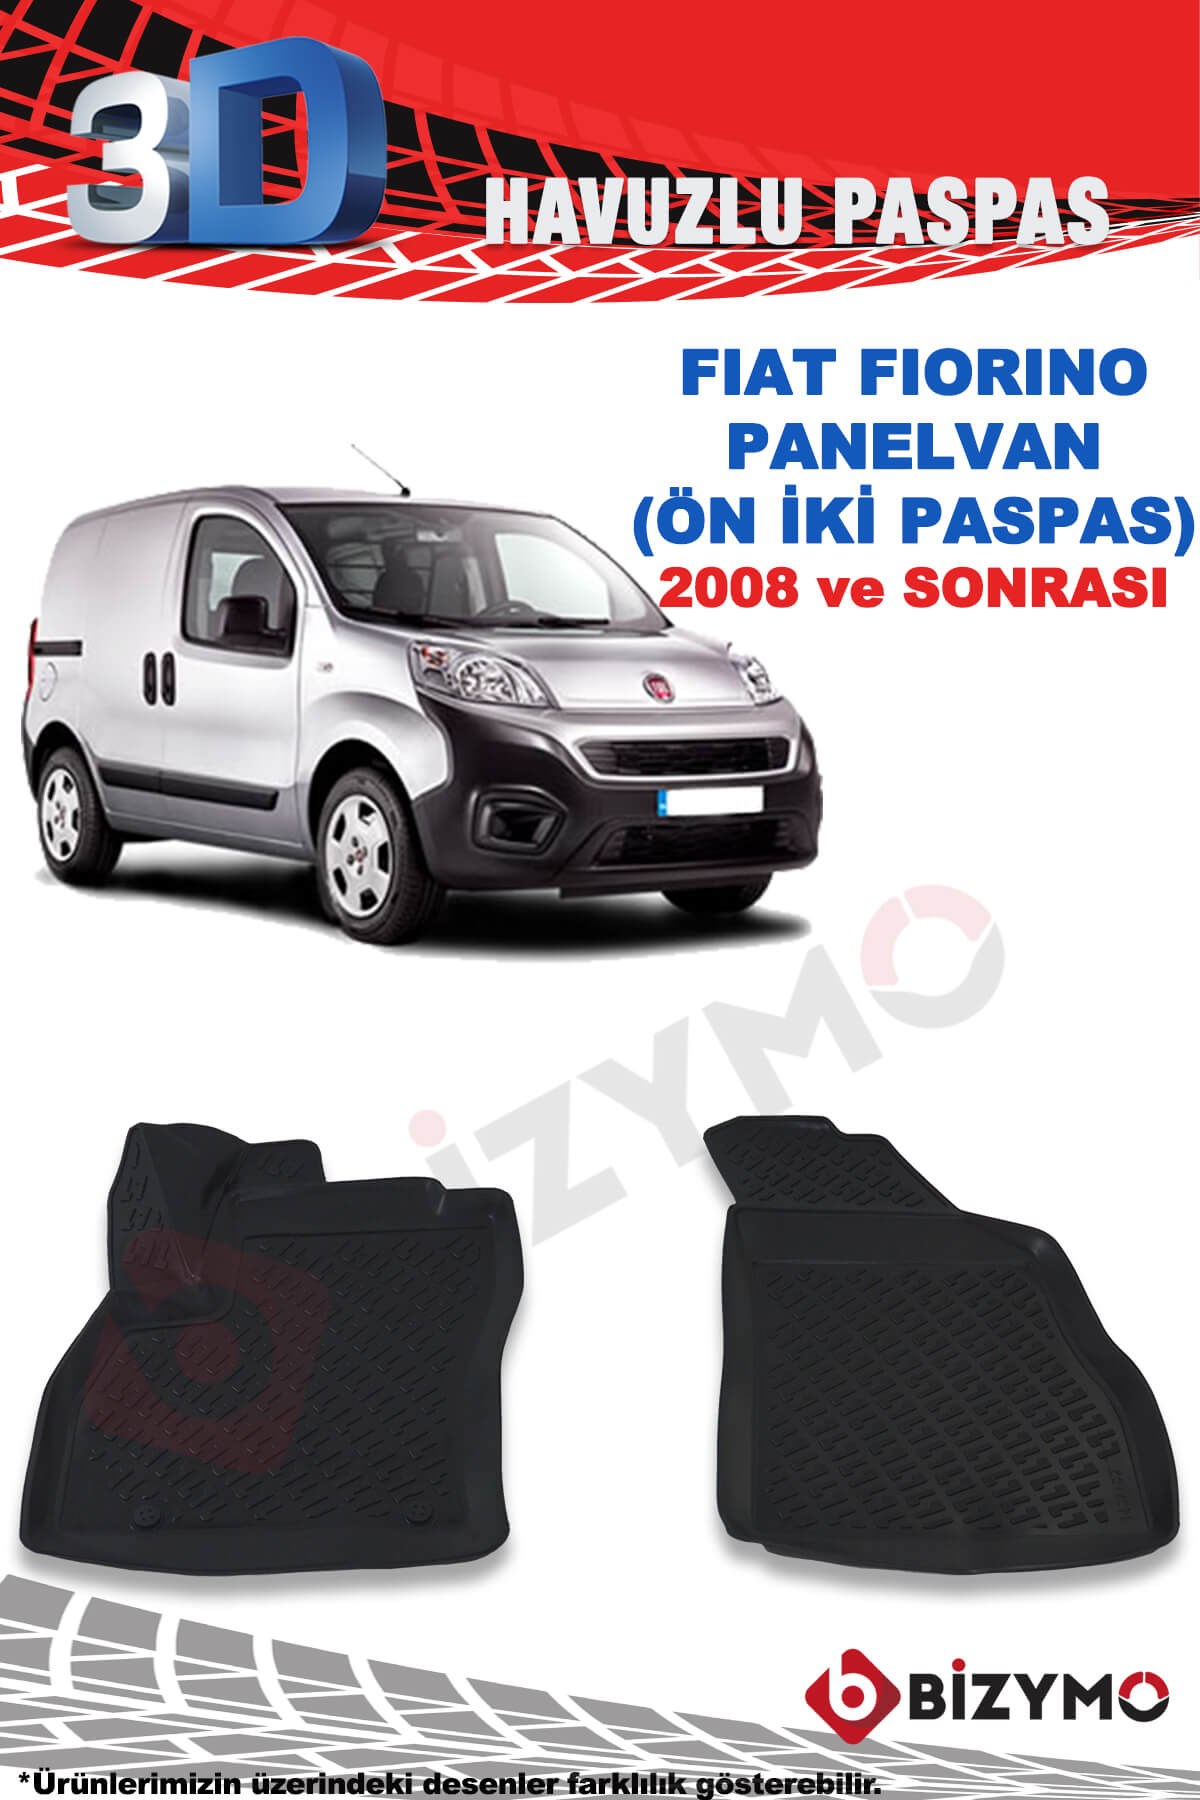 Fiat Fiorino Panelvan 2008 Ve Sonrası 3D Paspas Takımı Bizymo - Bizim Oto